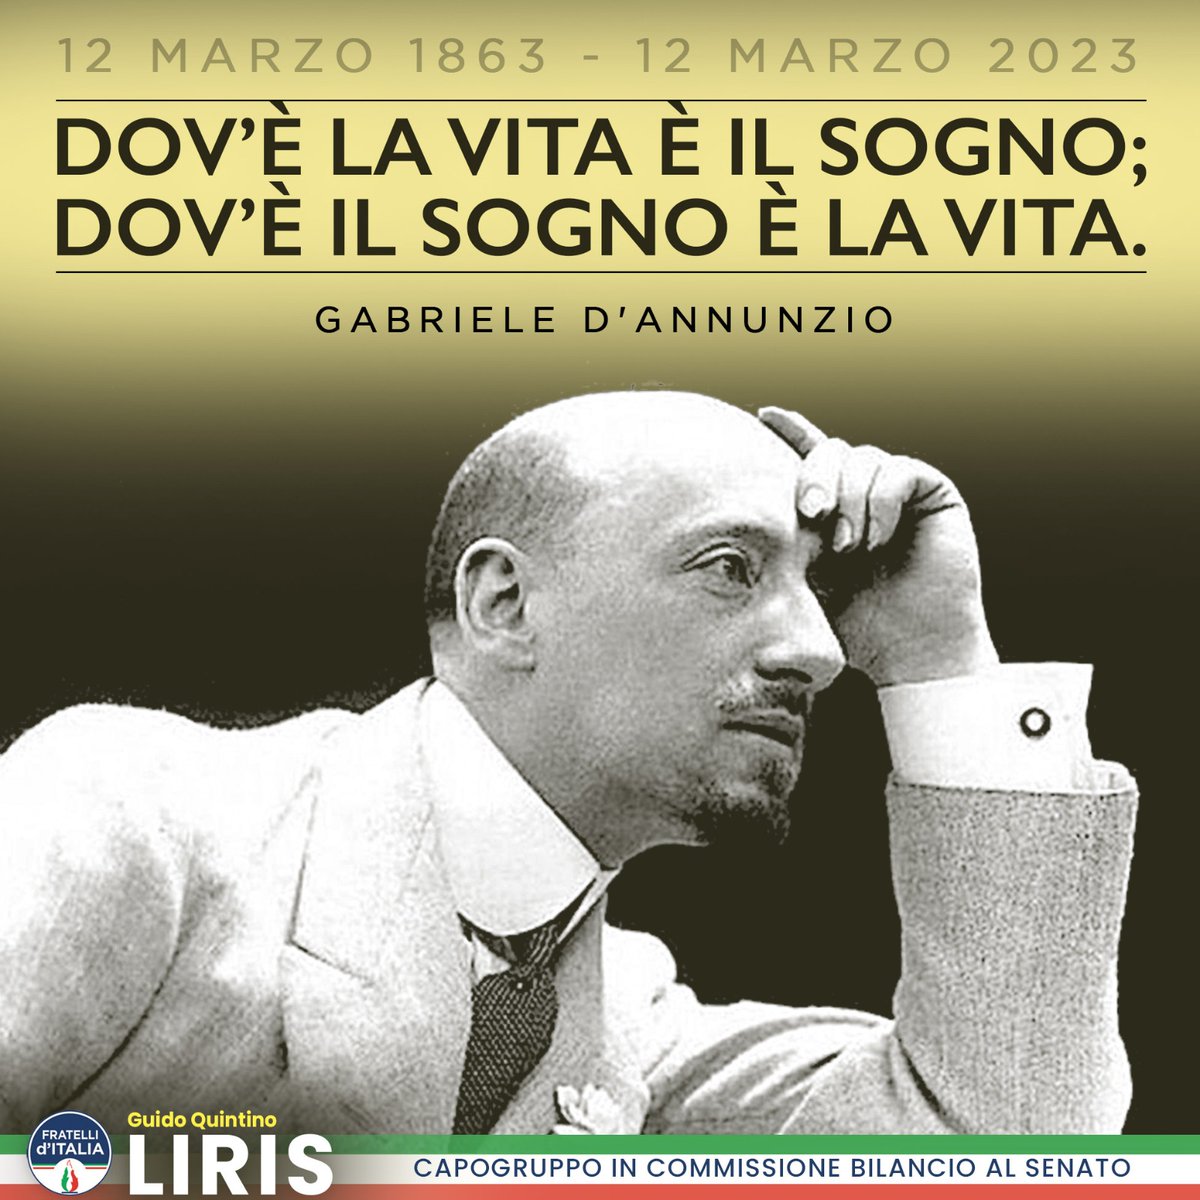 160 anni dalla nascita del #sommopoeta abruzzese, Gabriele D'Annunzio. 🇮🇹